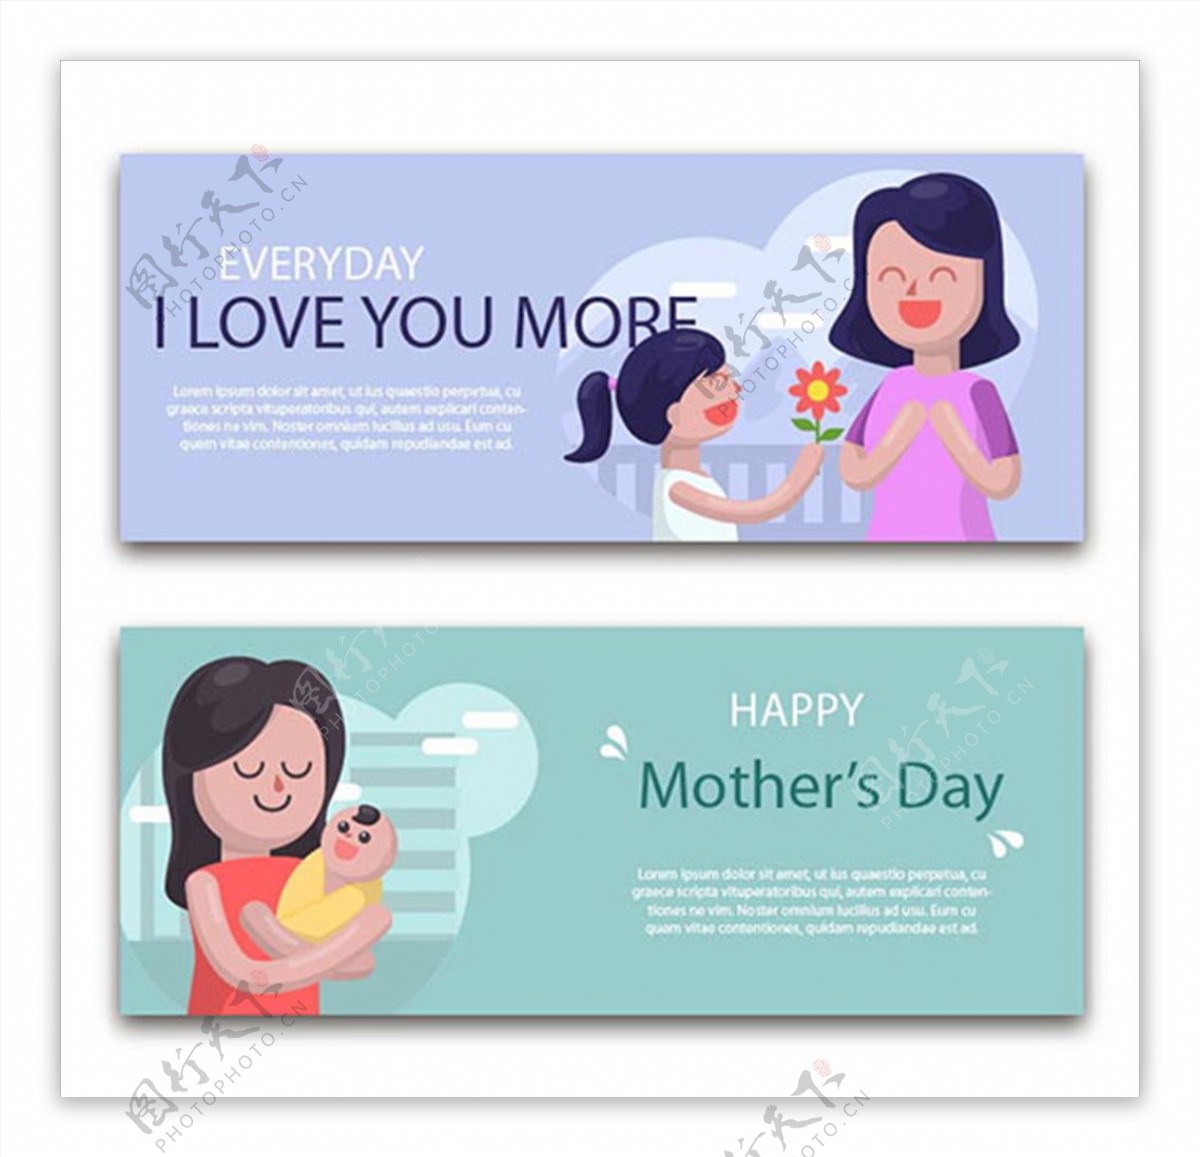 两款卡通母亲节快乐横幅